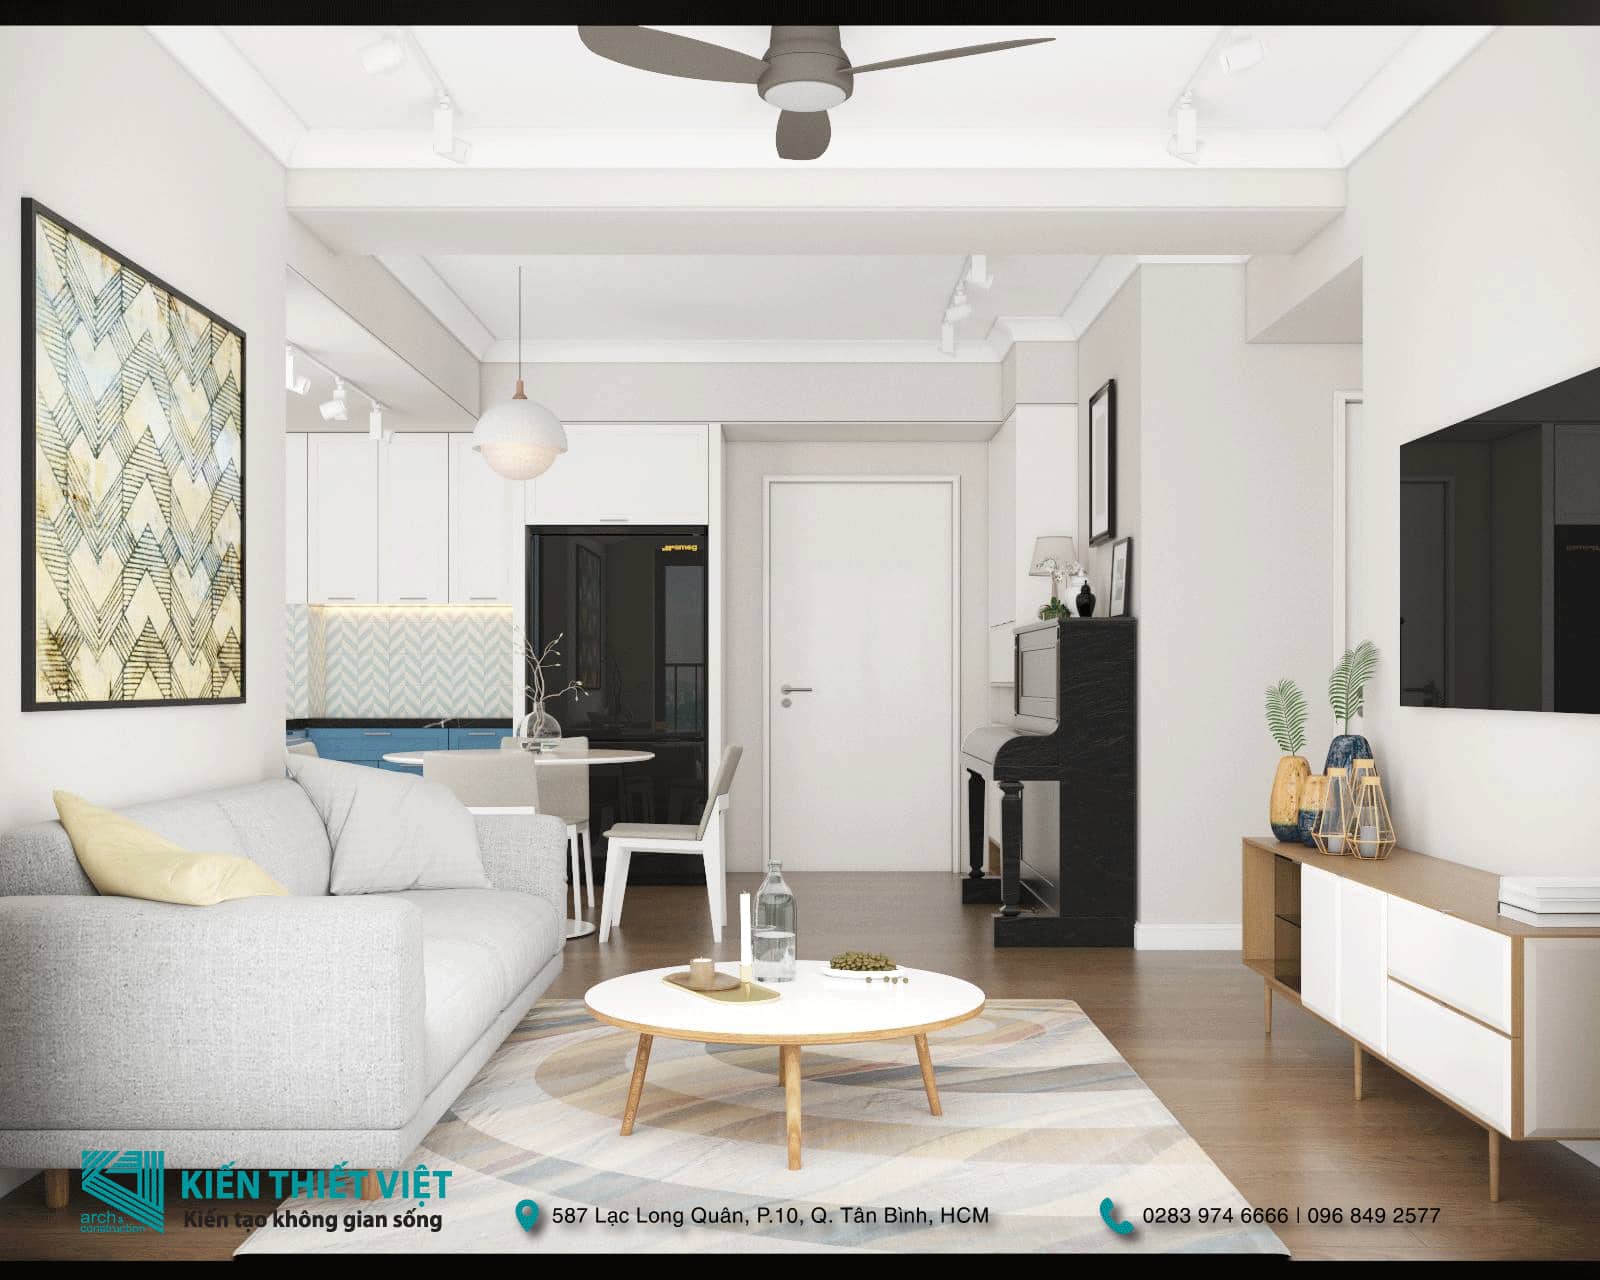 Báo giá thiết kế nội thất căn hộ chung cư căn hộ palm heights